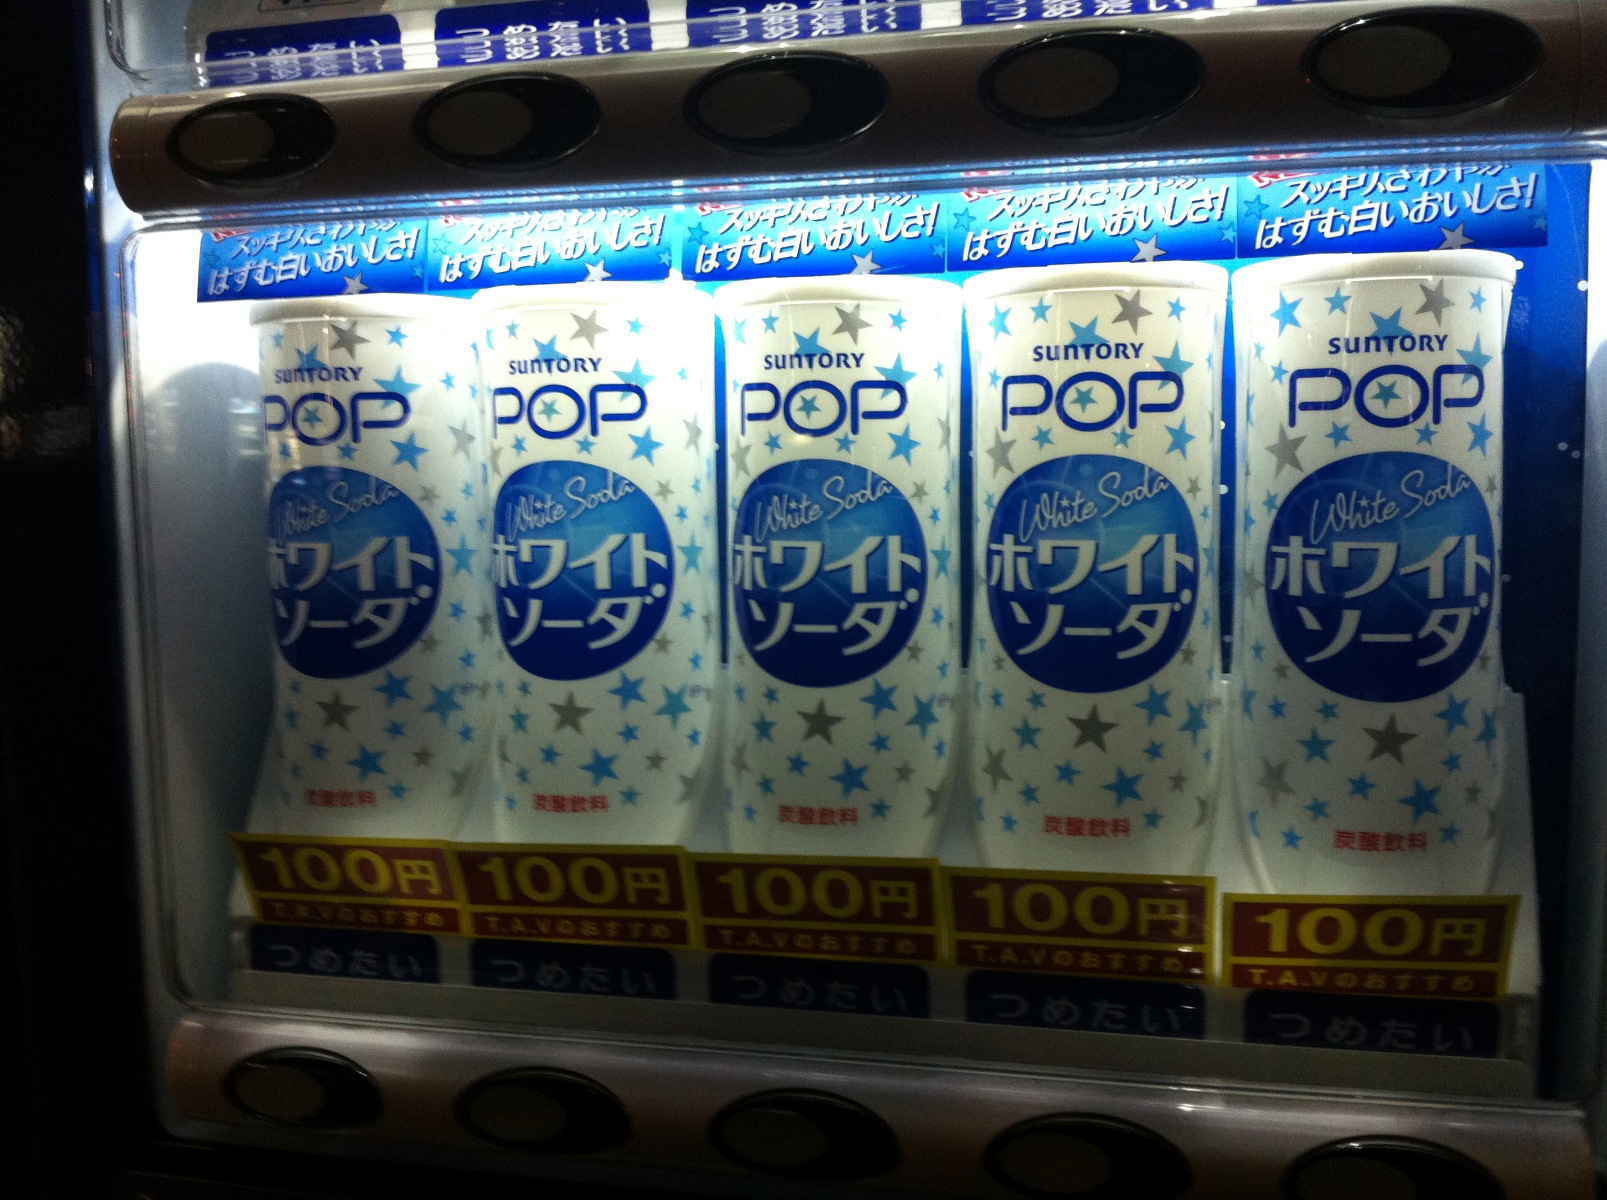 Suntory Pop Howaito Sōda (White soda)